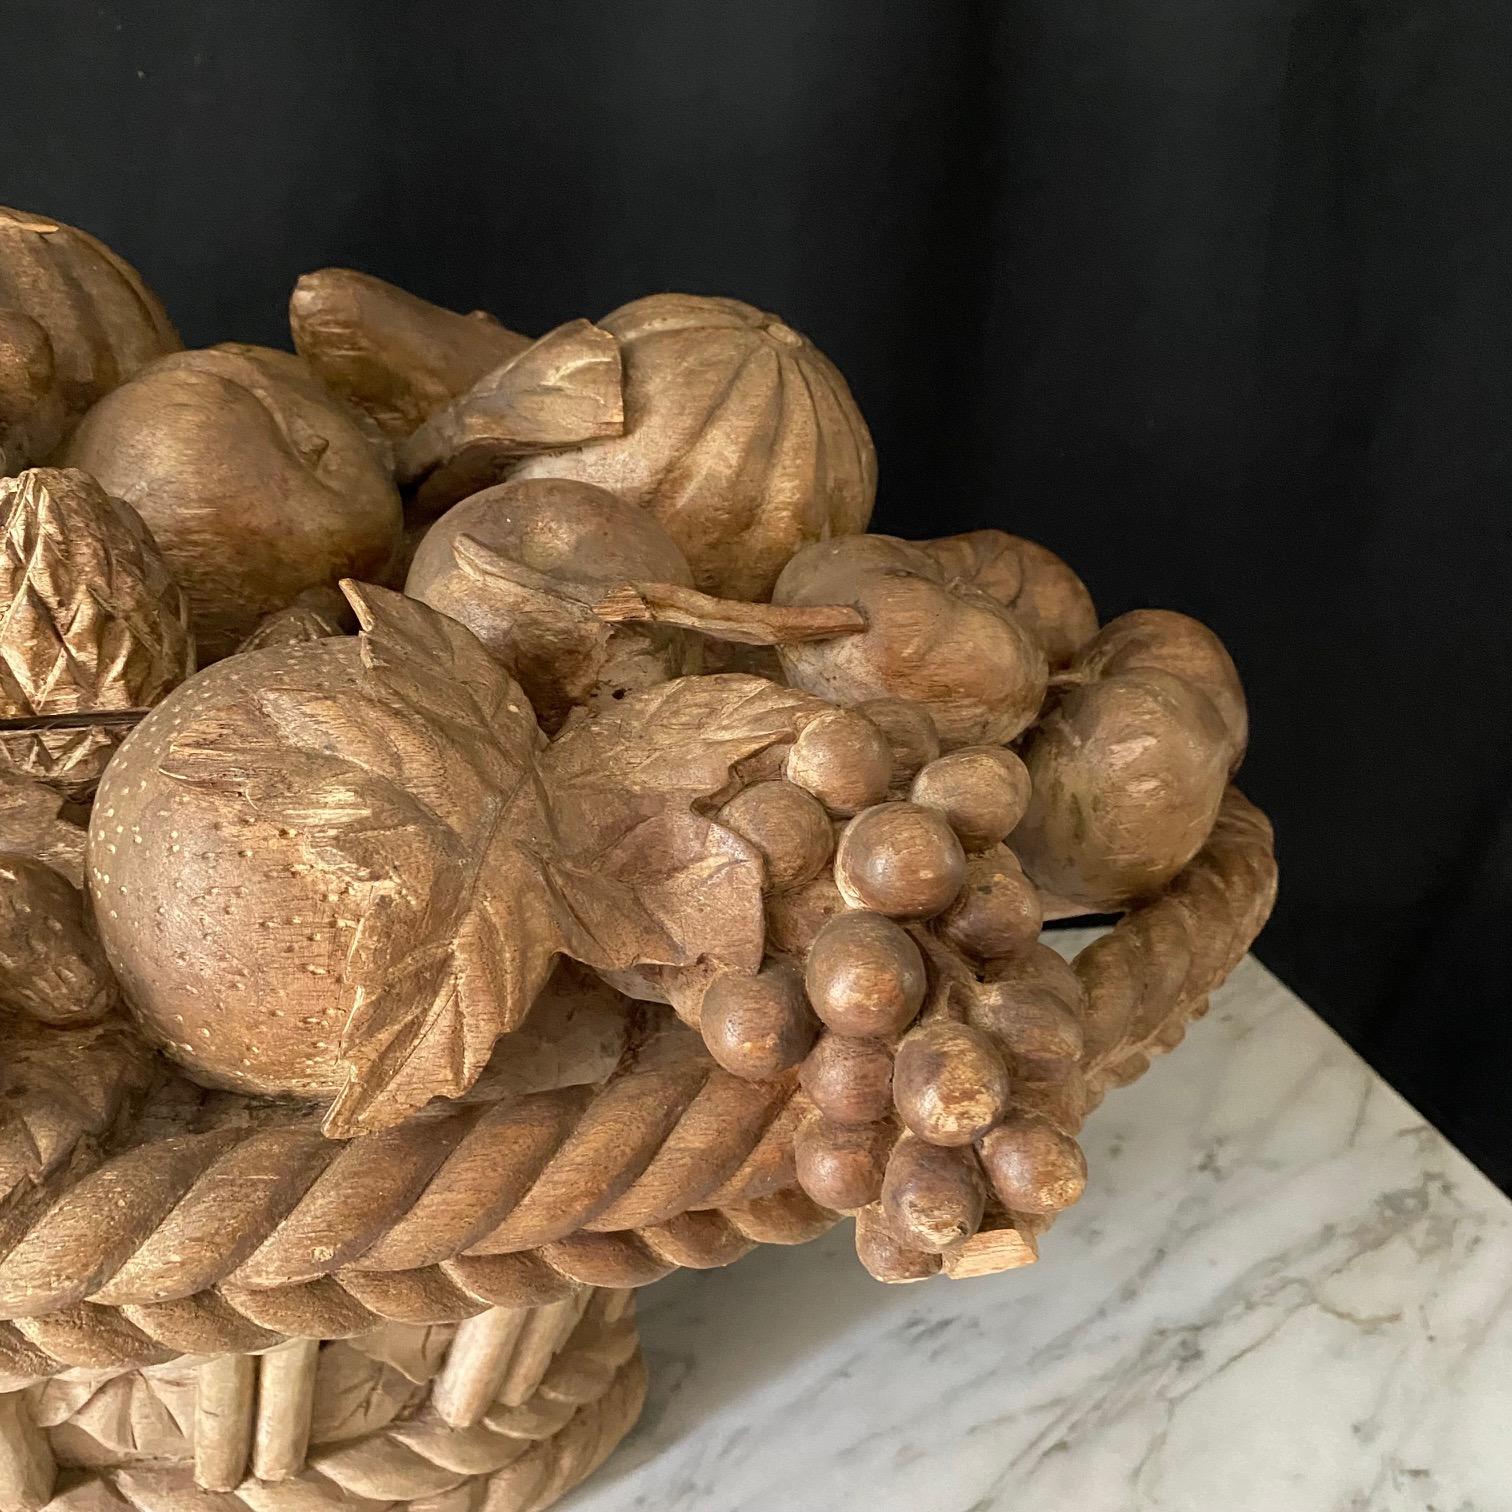 Atemberaubend großer und detailliert geschnitzter französischer Flechtkorb, gefüllt mit Obst. Ein Füllhorn, dieses schöne Kunstwerk zeigt atemberaubend geschnitzte Trauben, Äpfel und alle Arten von Obst, wunderbar in einem geflochtenen Korb Basis